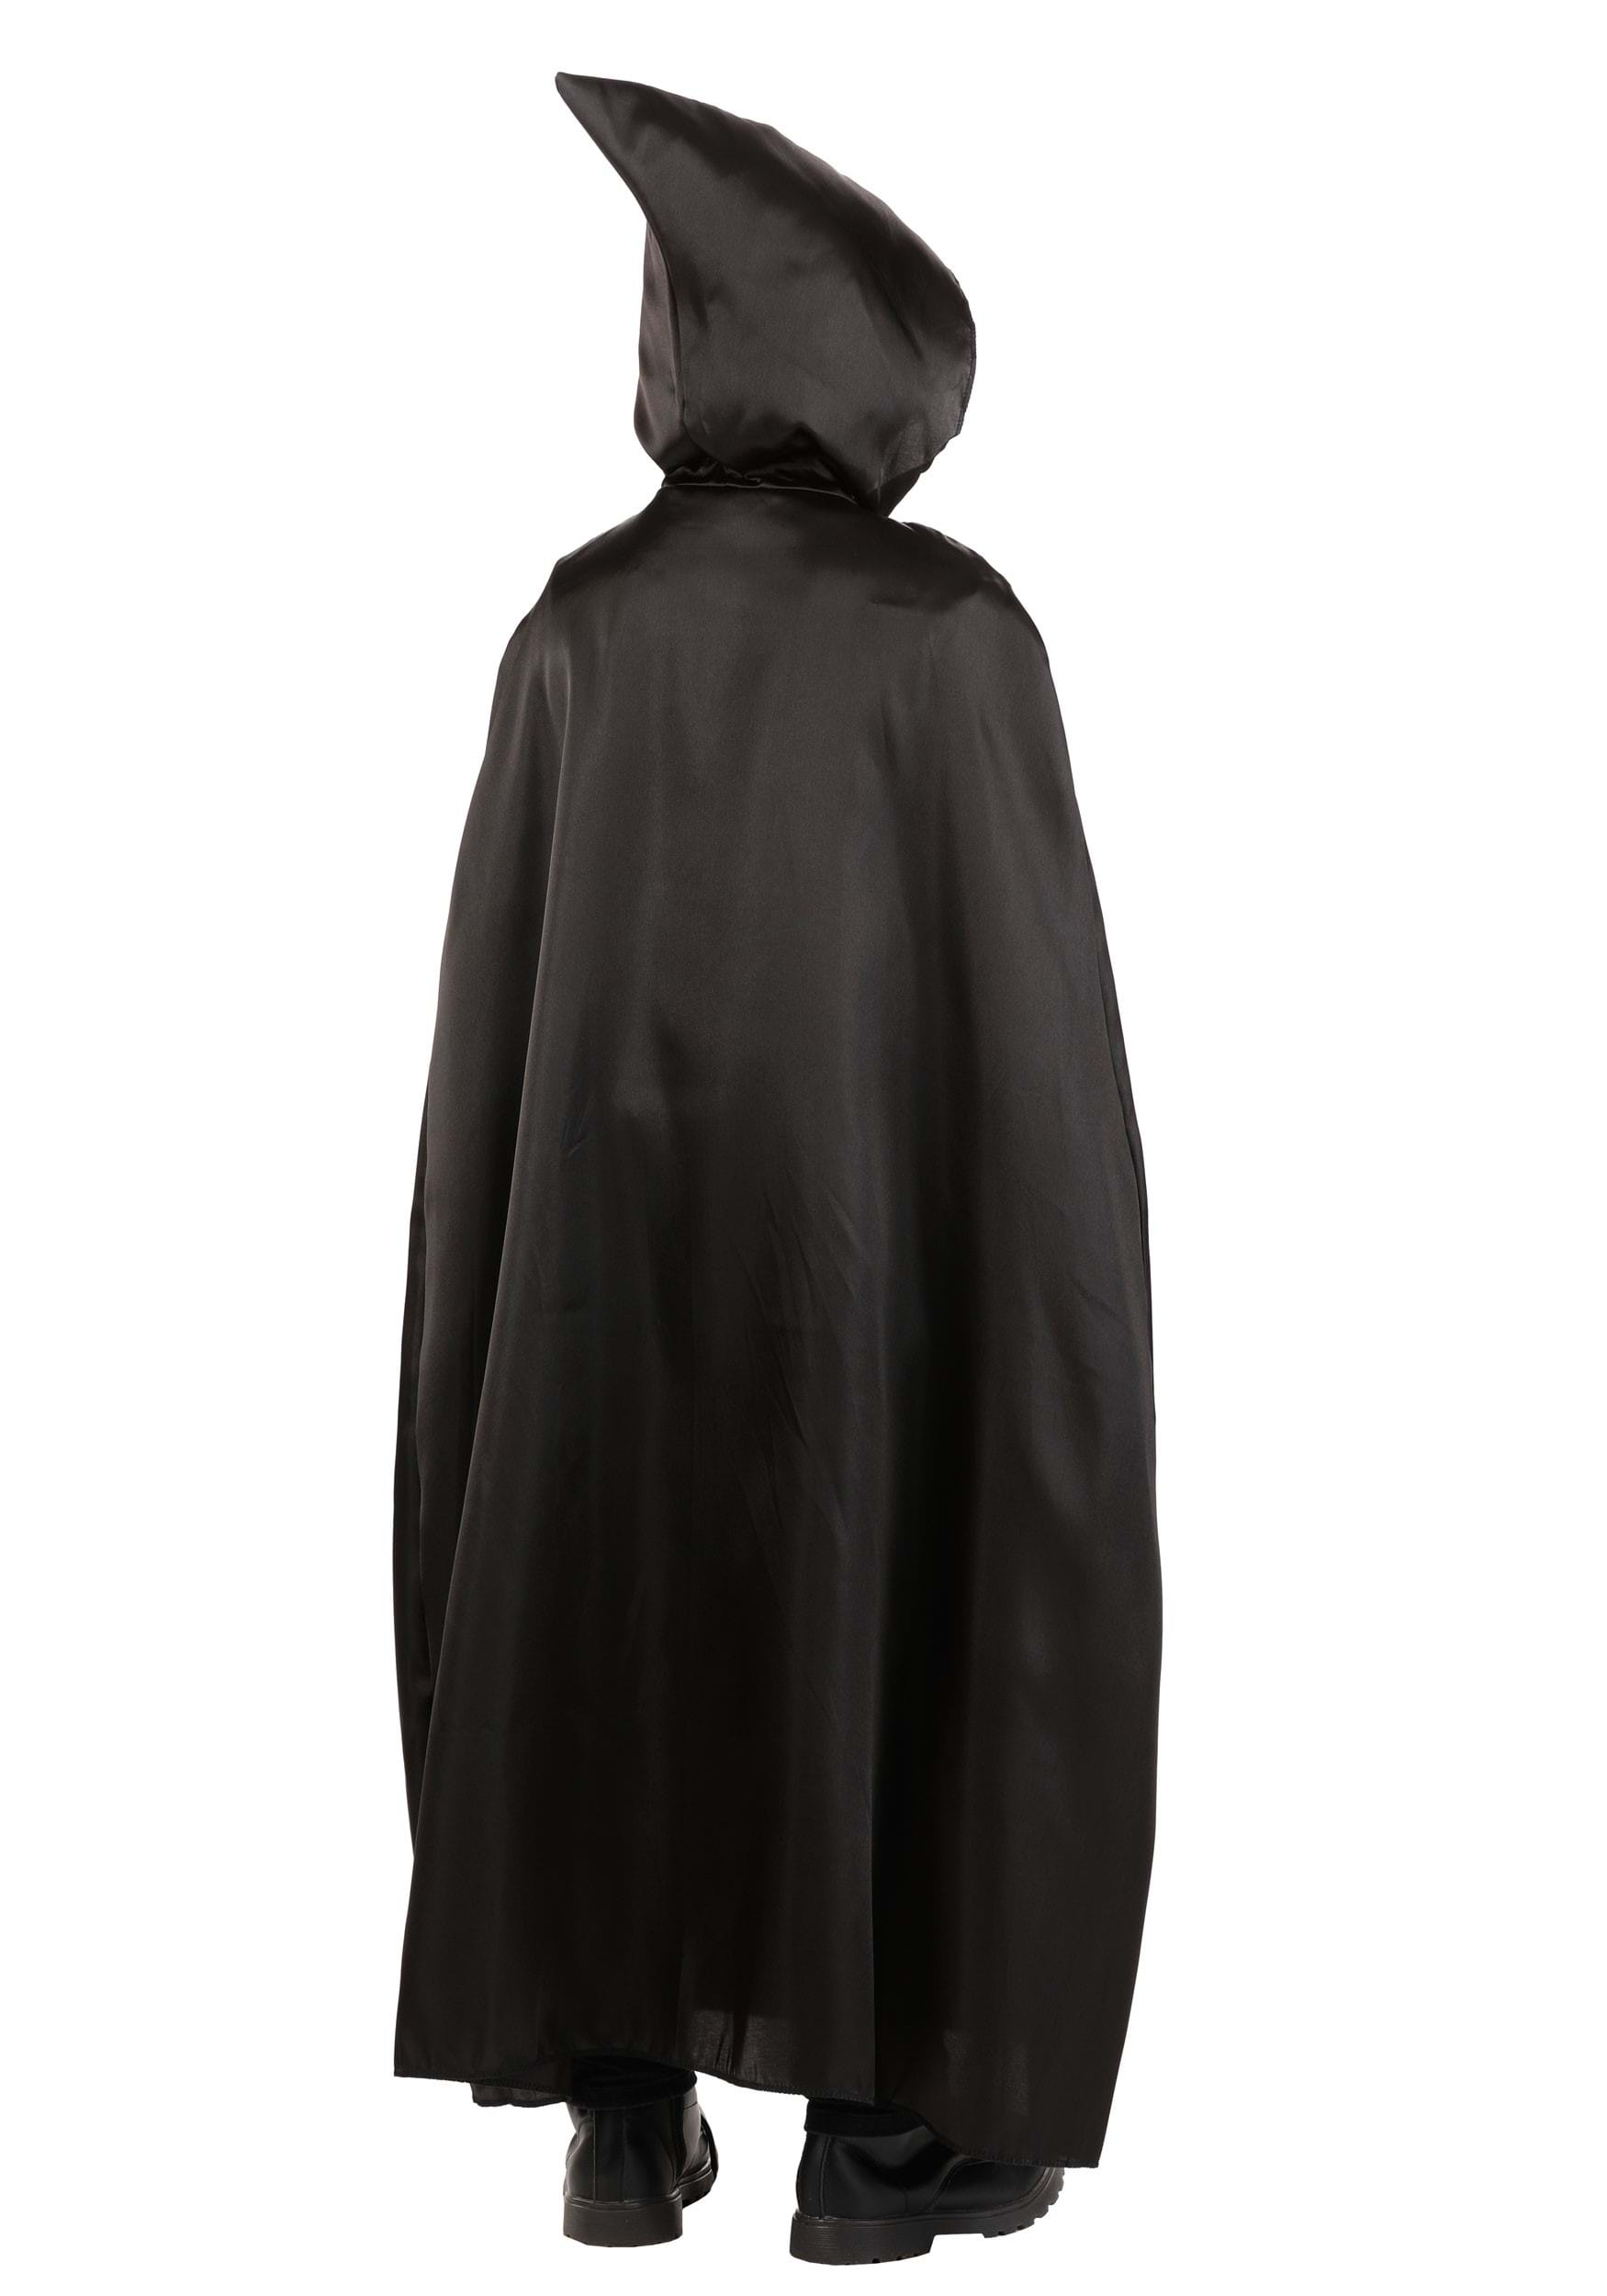 Children's Black Hooded Cloak , Costume Cloak